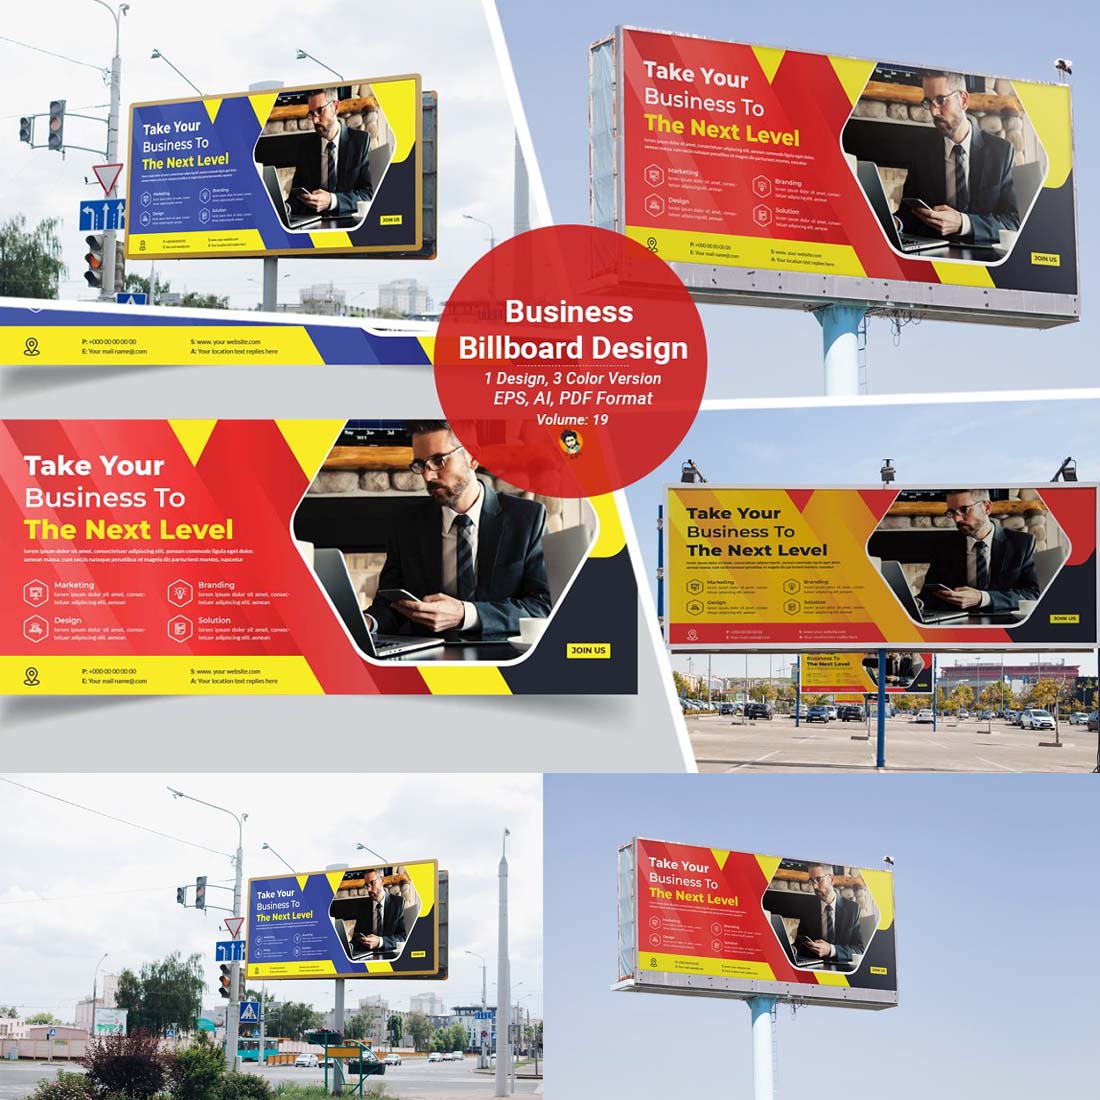 Business Billboard Design Template V-19 cover image.